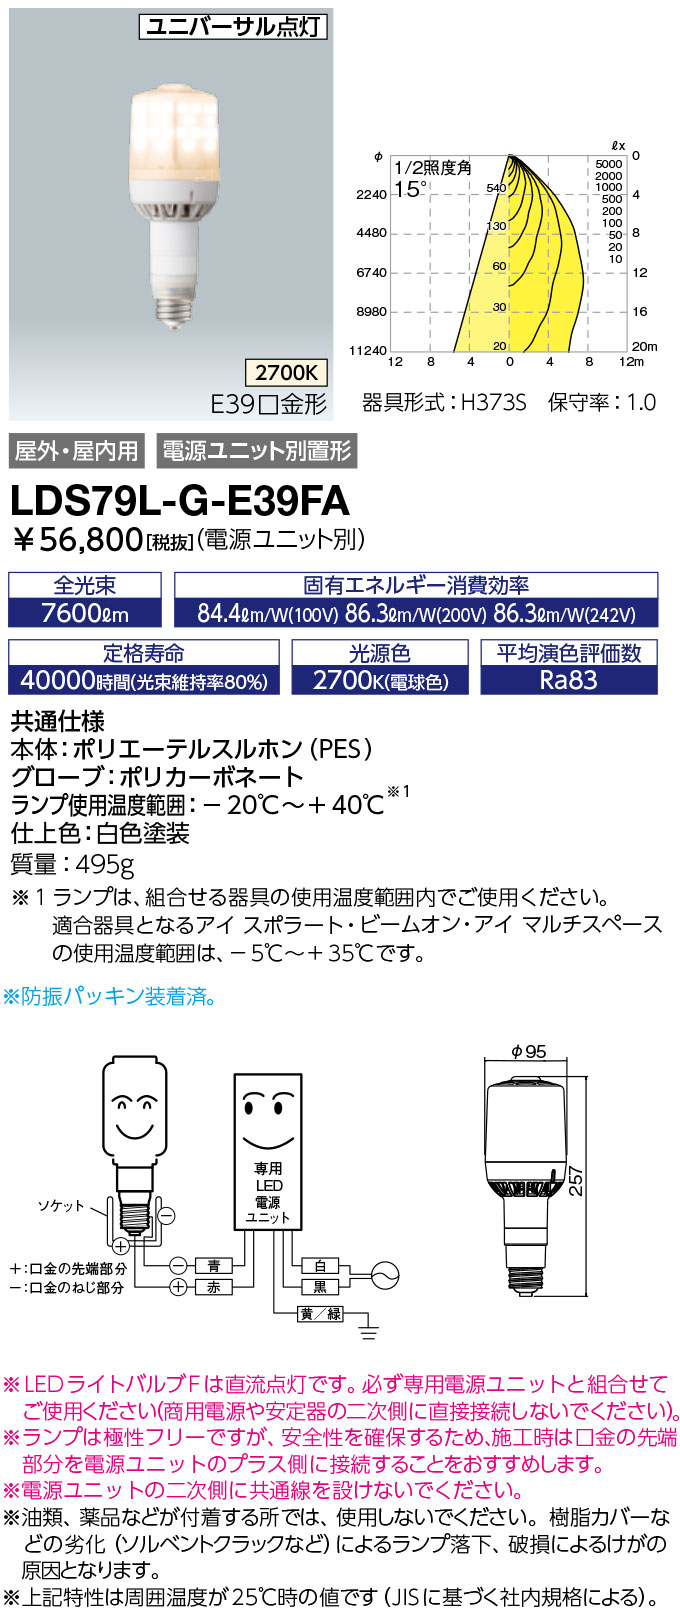 LDS79L-G-E39FA ランプ レディオック LEDライトバルブF水銀ランプ250W相当 極性フリー E39口金 79W 電球色岩崎電気  ランプ タカラショップ